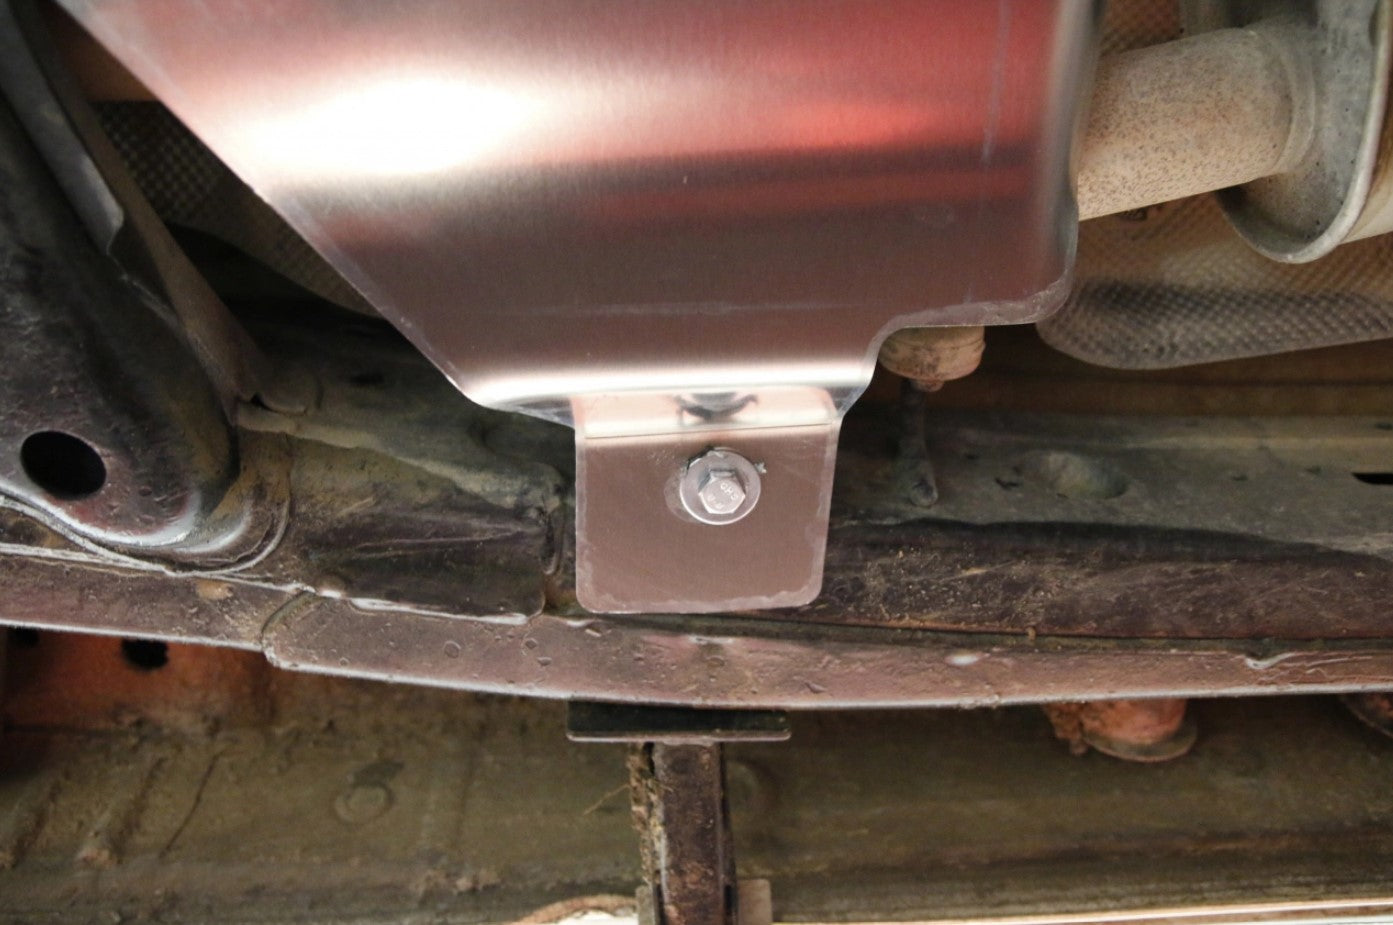 extremo de una protección de aluminio atornillada a los bajos del vehículo